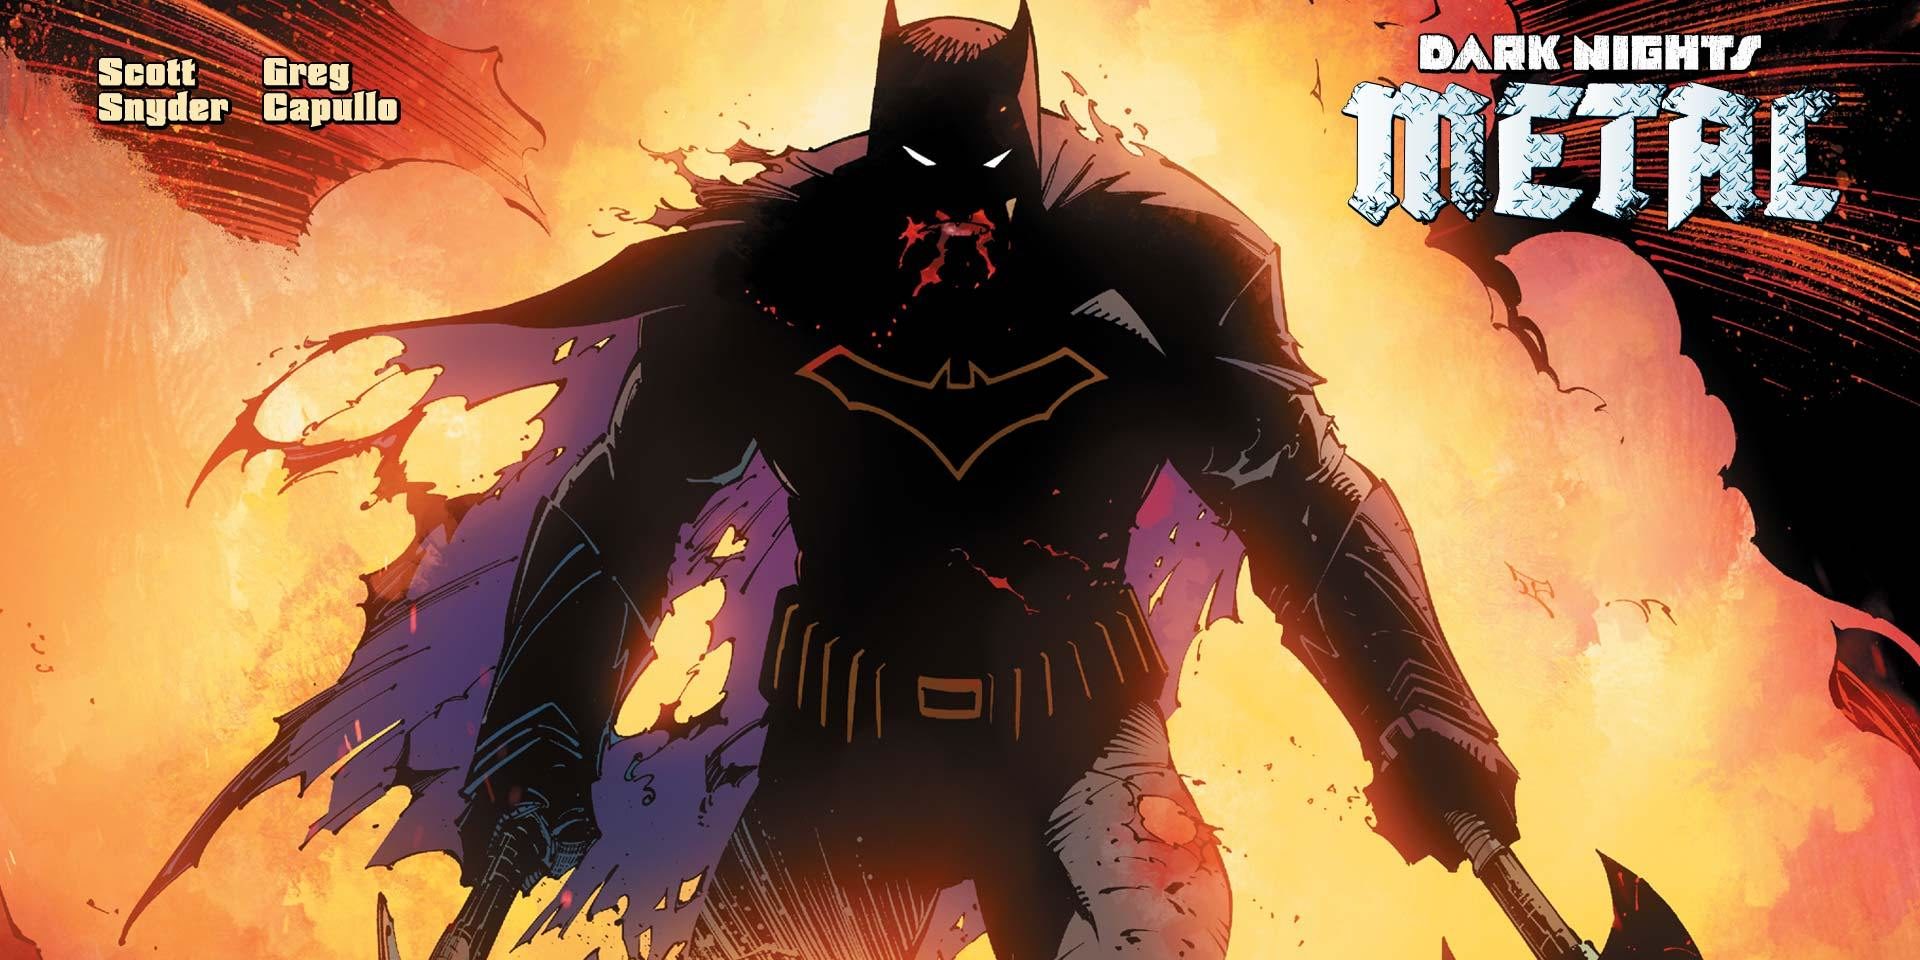 Metal: Il Multiverso Oscuro invade l’Universo DC